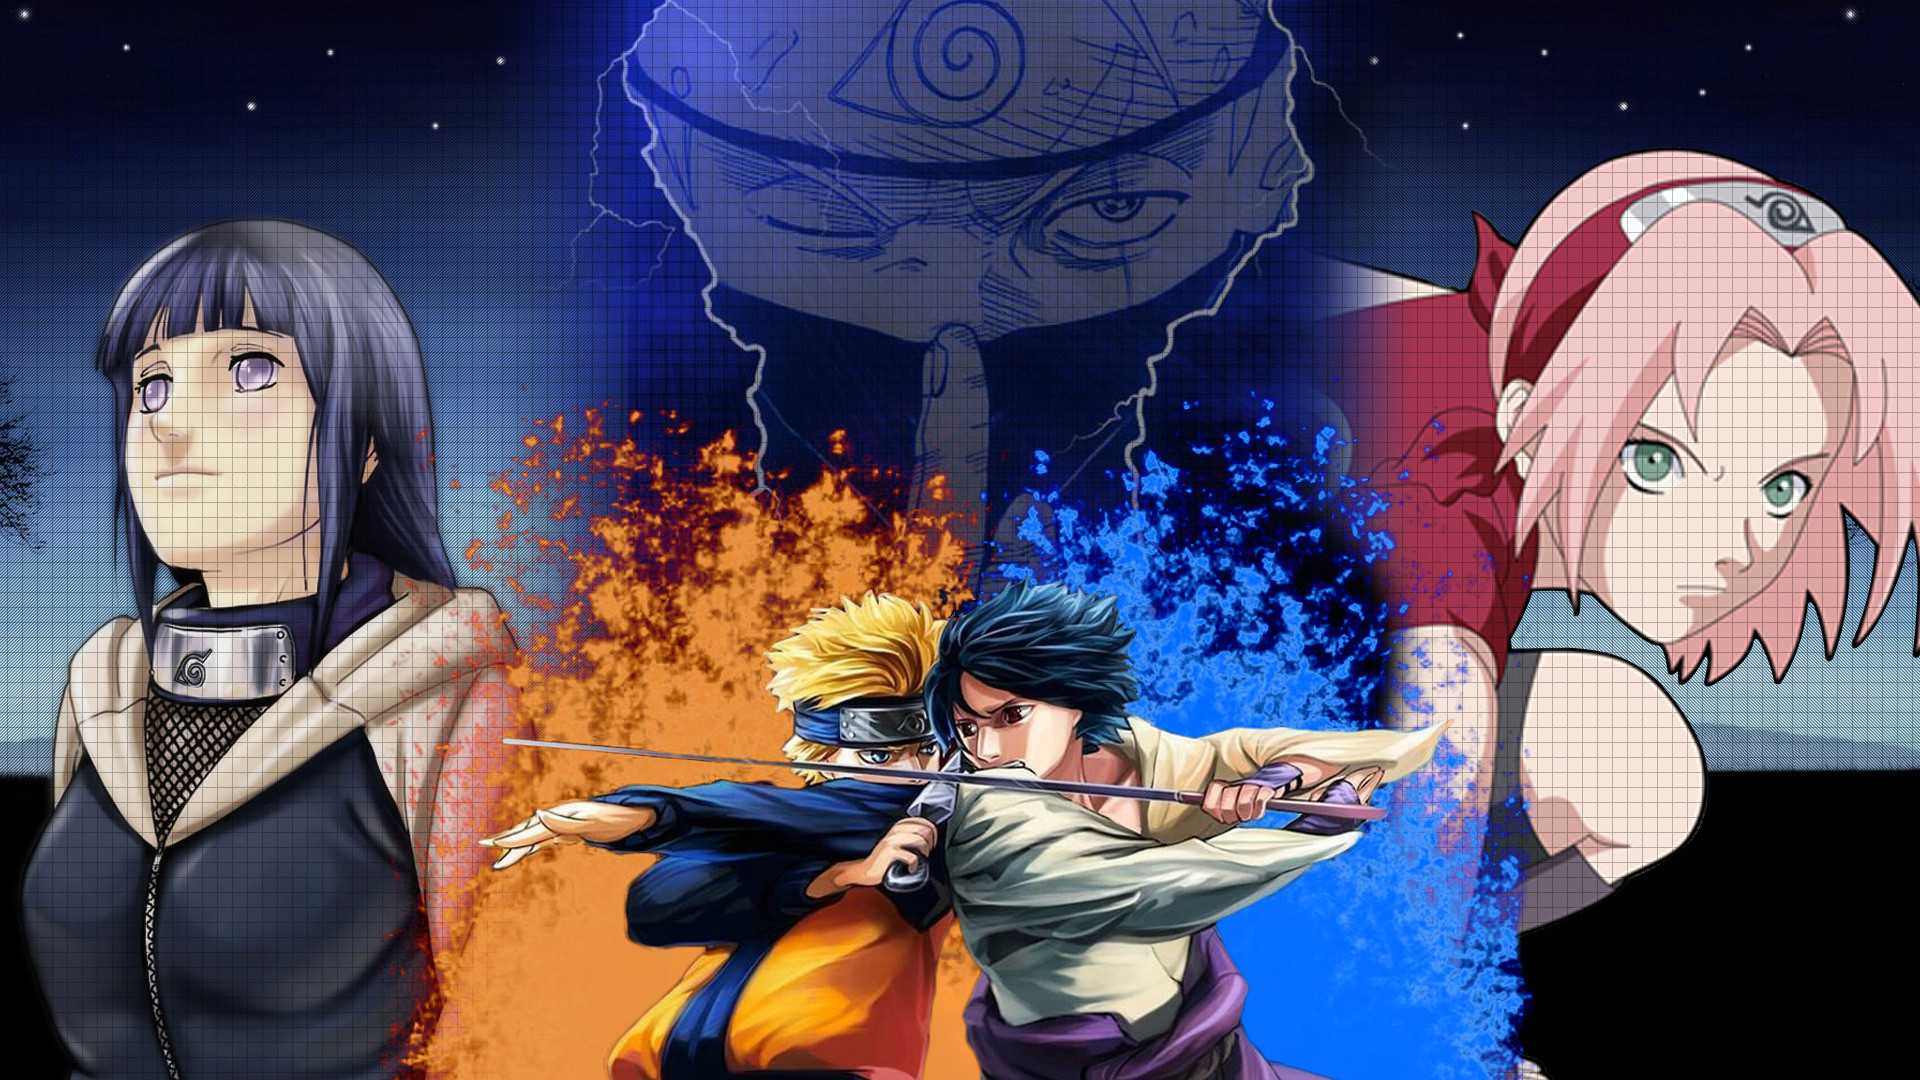 Naruto Shippuden  Sakura Haruno 4K wallpaper download